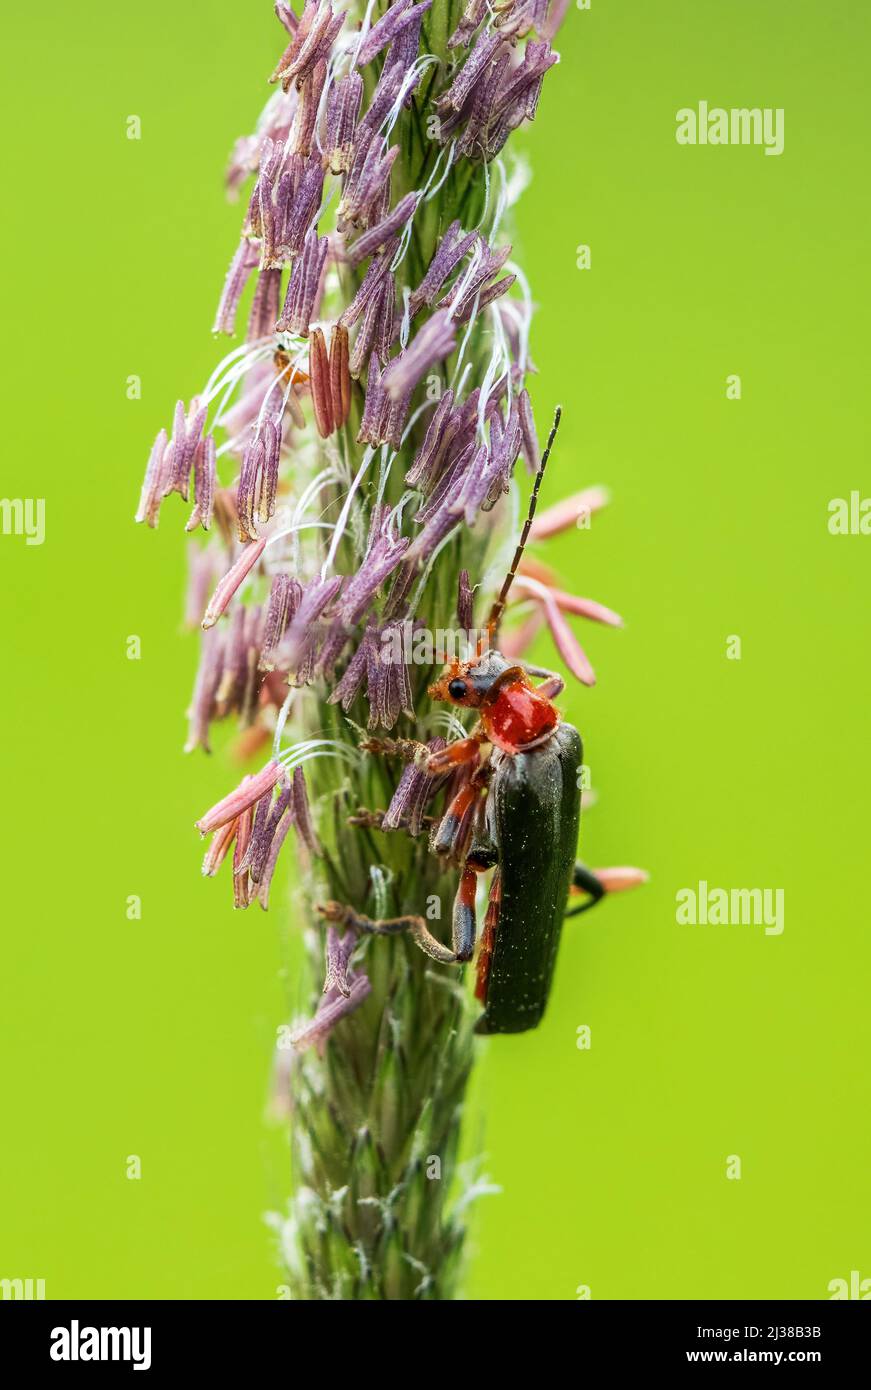 Escarabajo Soldado - Cantharis livida rufipes, pequeño escarabajo hermoso de prados y praderas europeas, República Checa. Foto de stock